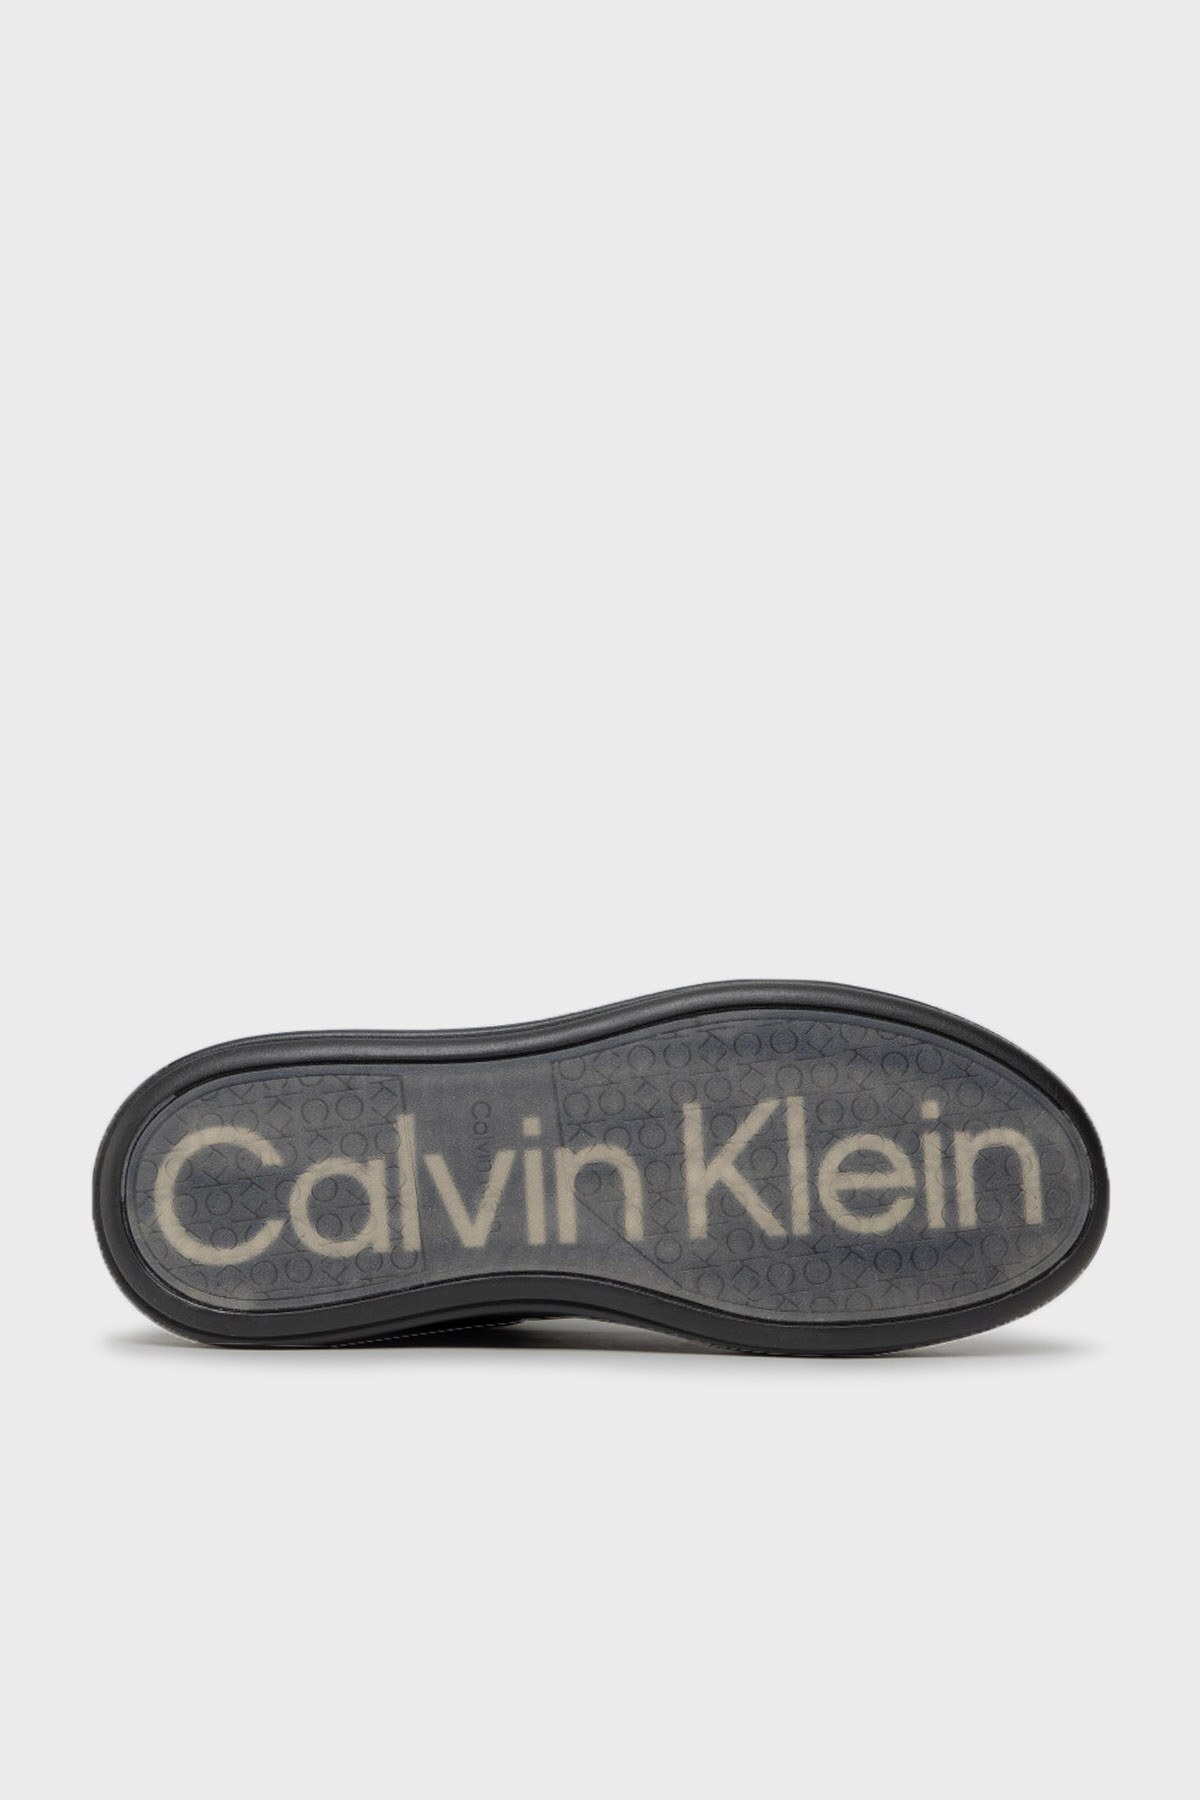 Calvin Klein Erkek Ayakkabı HM0HM00276 0GL SİYAH